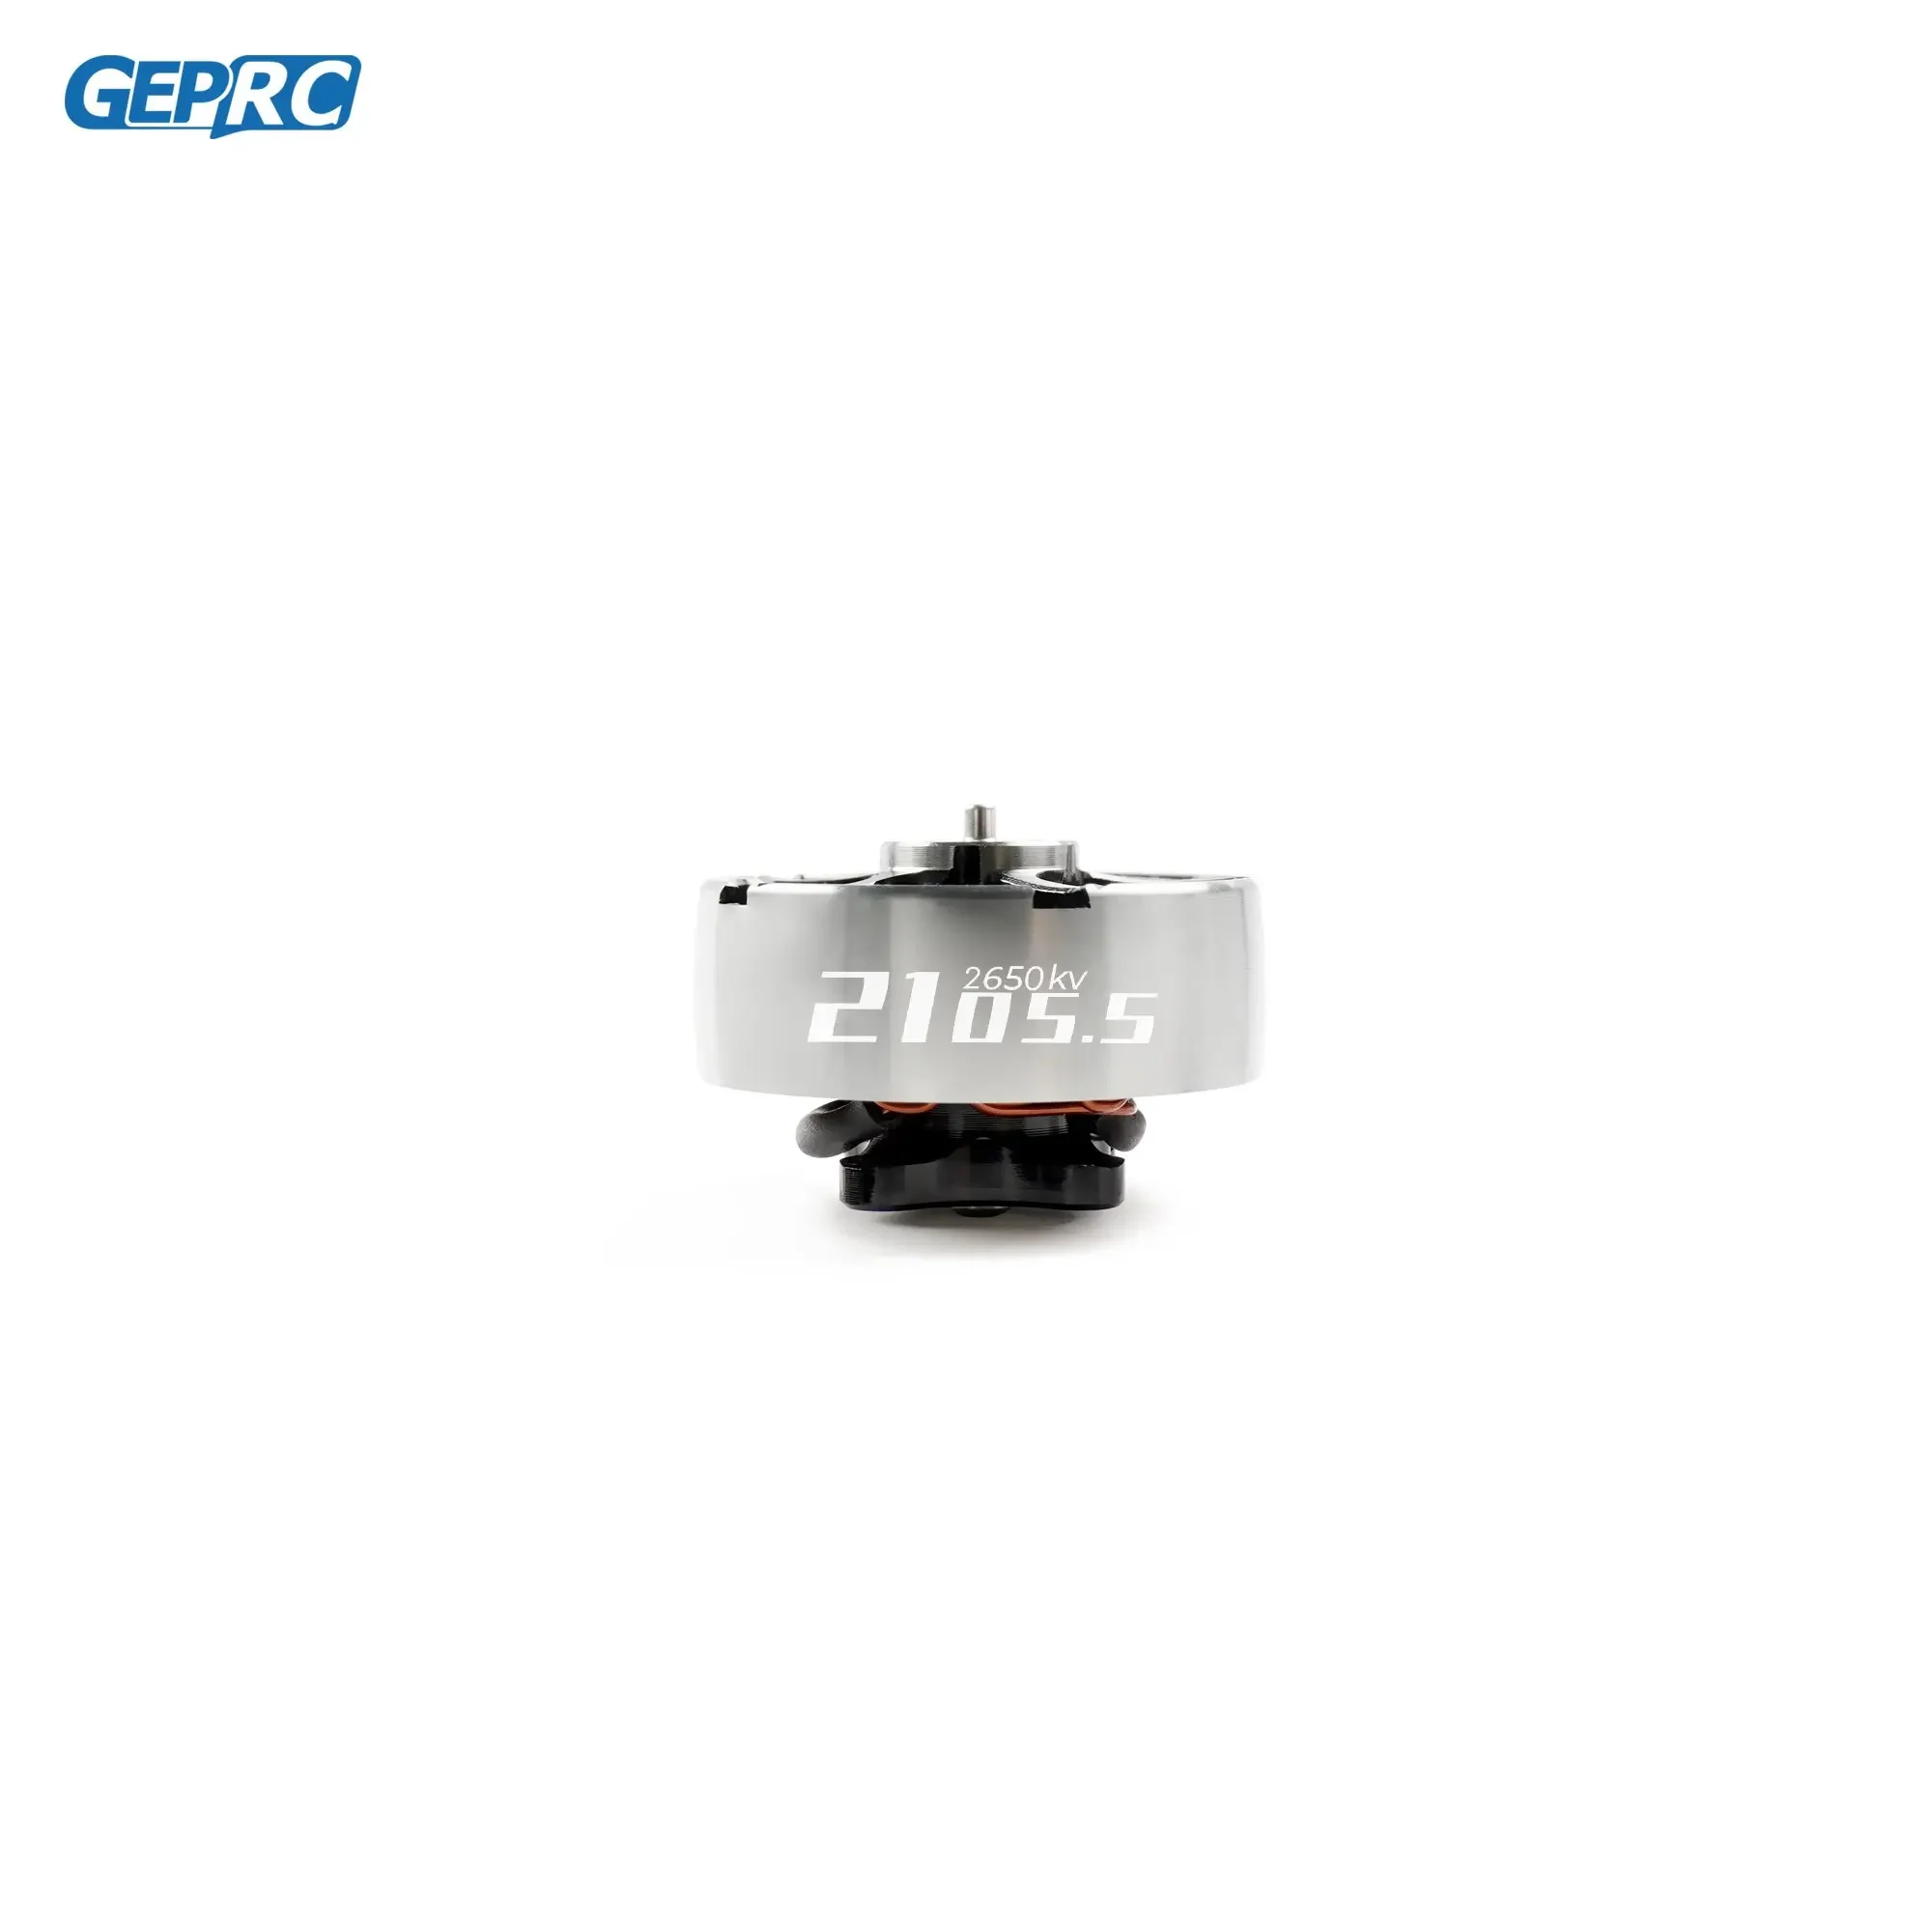 

Двигатель GEPRC SPEEDX2 2105,5 2650KV/3450KV подходит для дрона серии Cinelog35 для DIY RC FPV квадрокоптера Freestyle аксессуары для дрона